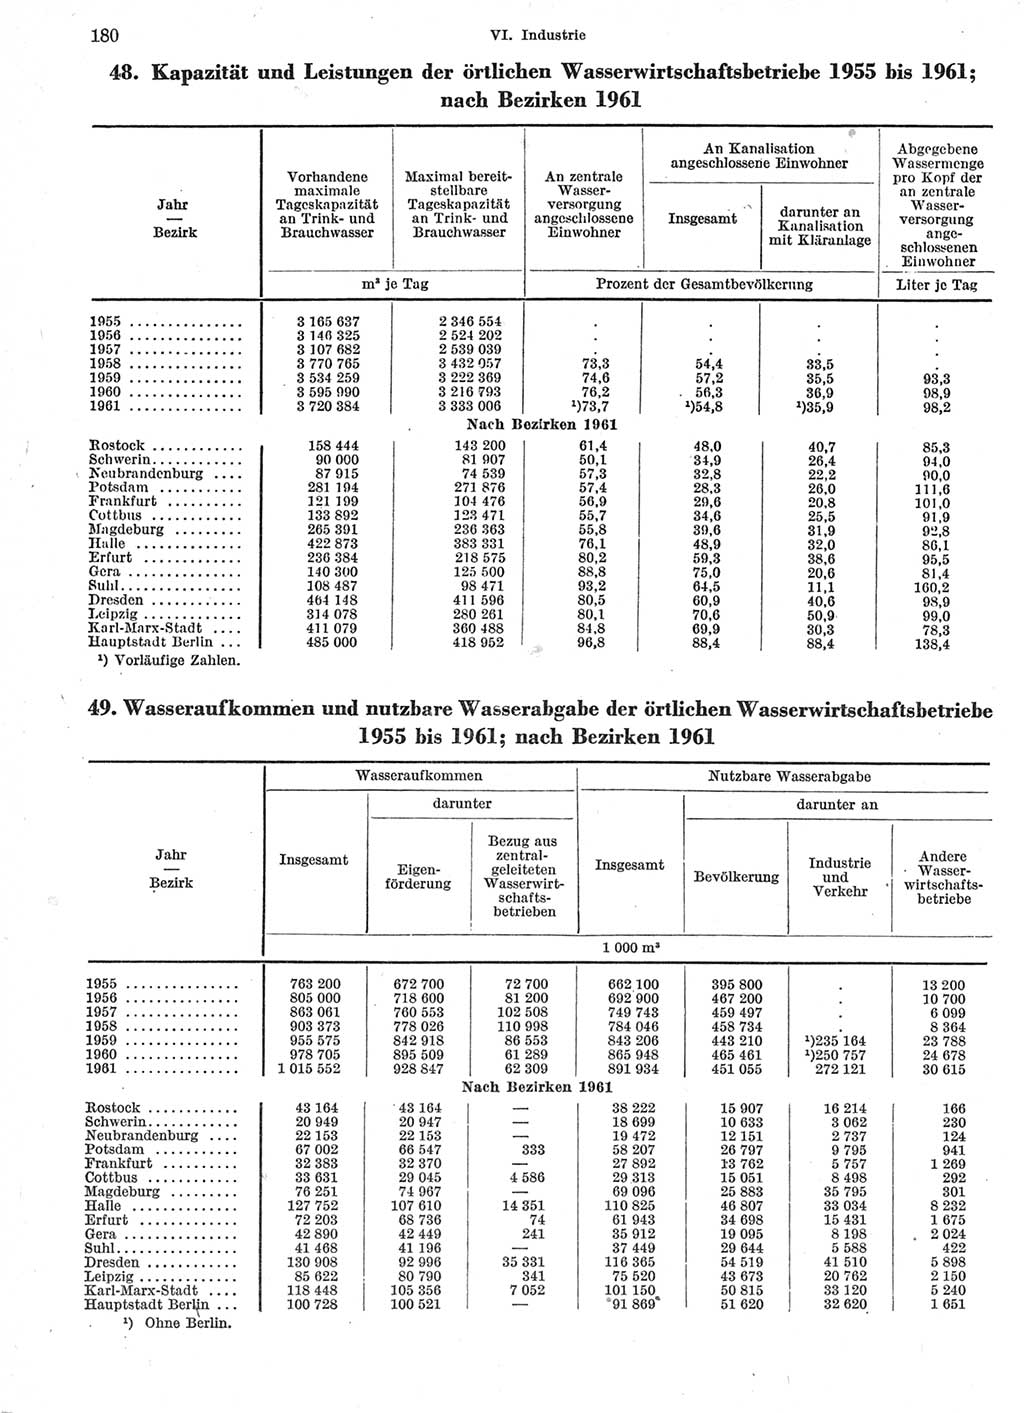 Statistisches Jahrbuch der Deutschen Demokratischen Republik (DDR) 1963, Seite 180 (Stat. Jb. DDR 1963, S. 180)